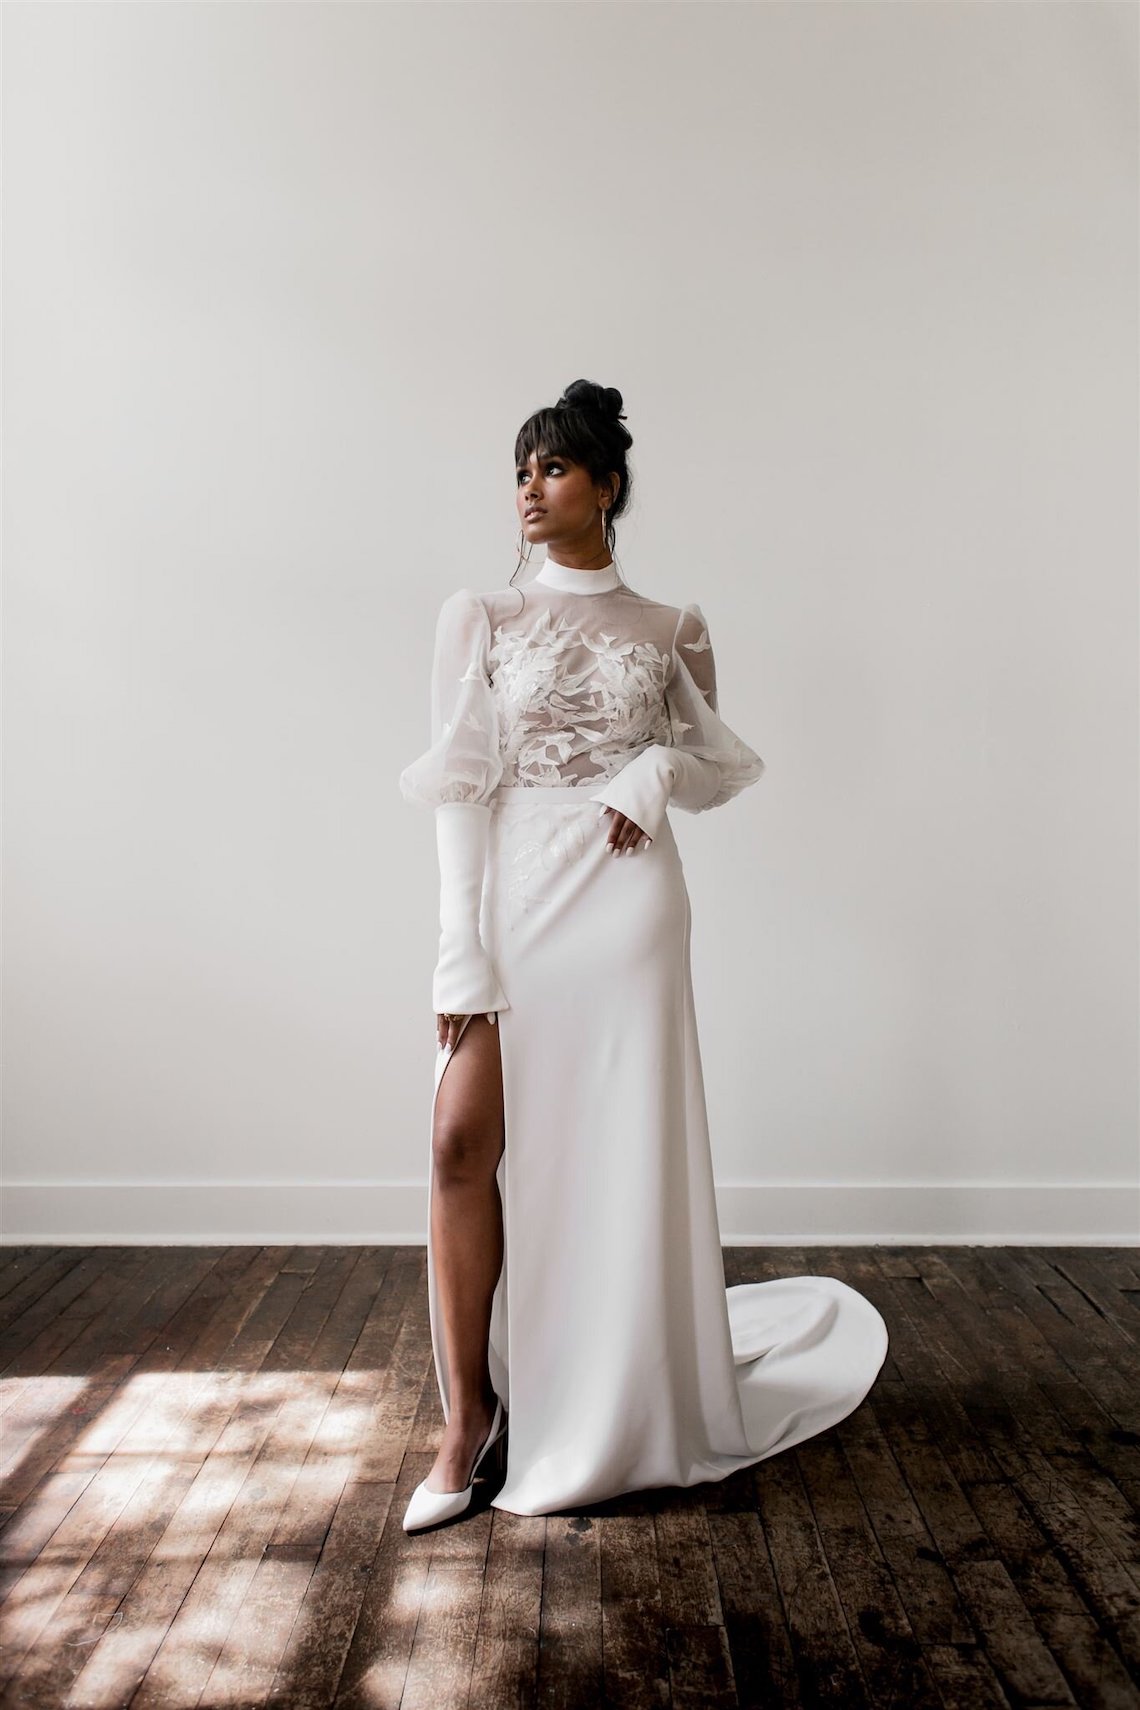 The Simone by Varca Bridal Bridal Musings Editors Favorite Wedding Dresses 2021 2022 Brides Claire Eliza Christina Castello 2 - 20 chiếc váy cưới đẹp nhất theo biên tập viên của chúng tôi